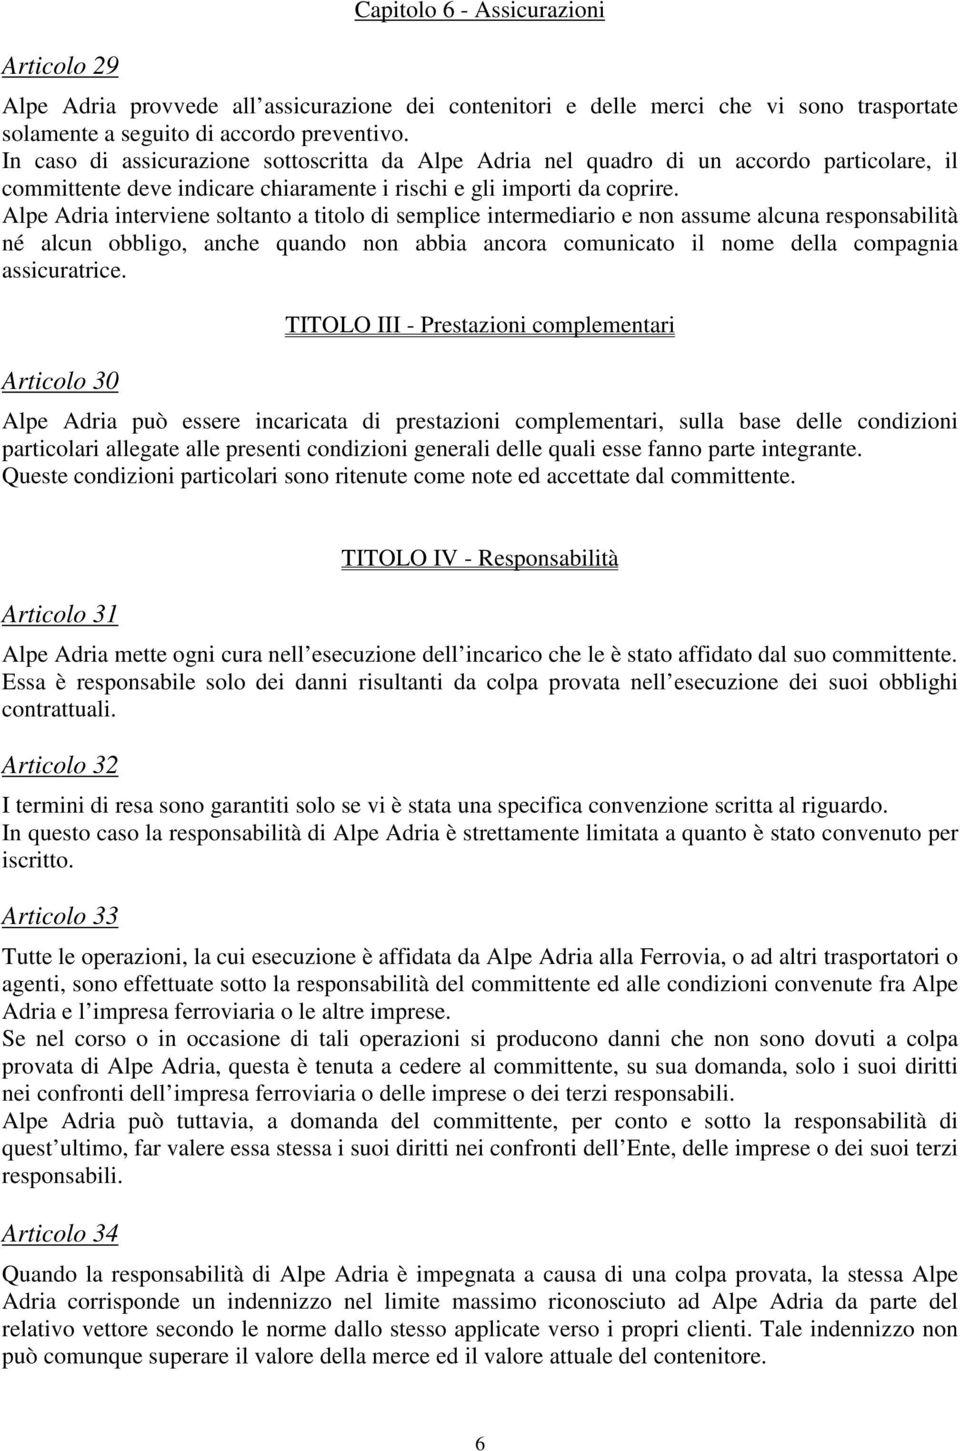 Alpe Adria interviene soltanto a titolo di semplice intermediario e non assume alcuna responsabilità né alcun obbligo, anche quando non abbia ancora comunicato il nome della compagnia assicuratrice.